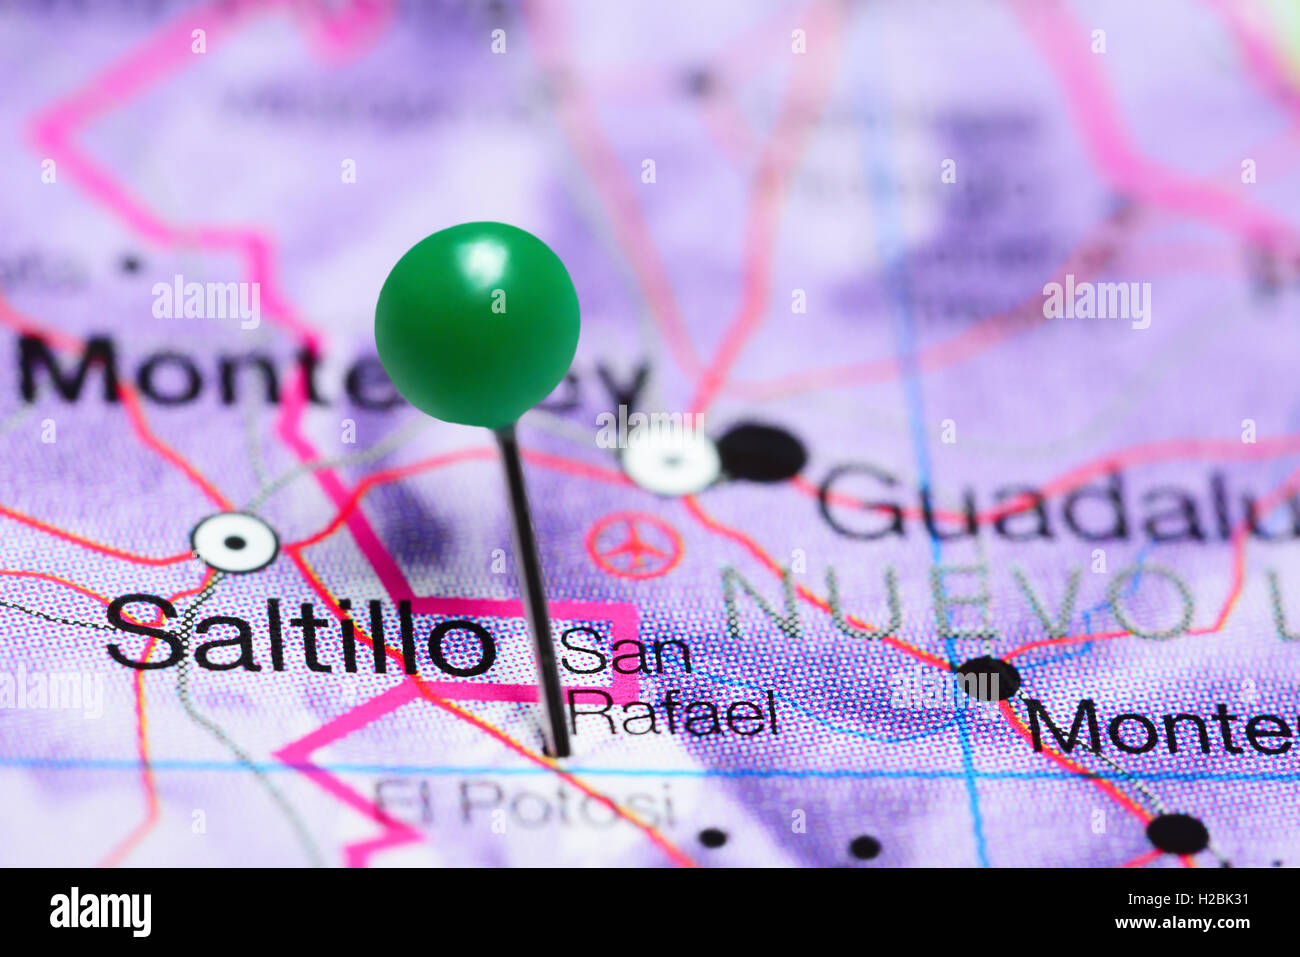 San Rafael anclado en un mapa de México Foto de stock